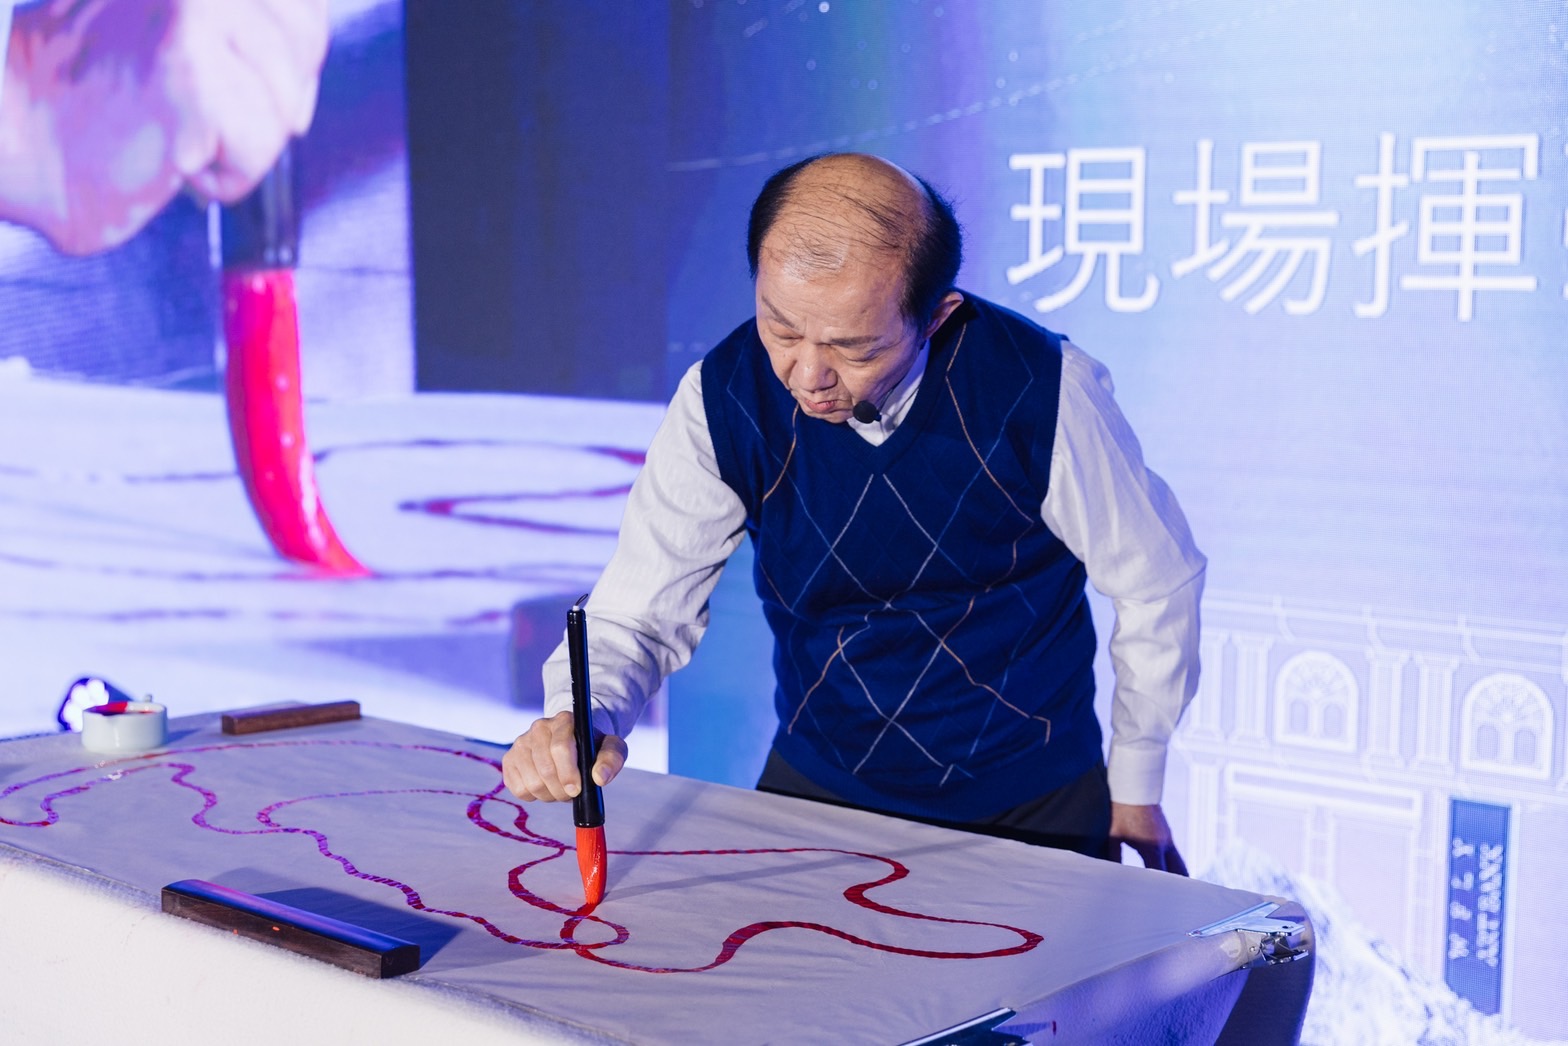 首屆嶄星軌跡藝術節盛⼤登場 盡顯⼀筆能量畫恢宏宇宙觀 - 早安台灣新聞 | Morning Taiwan News